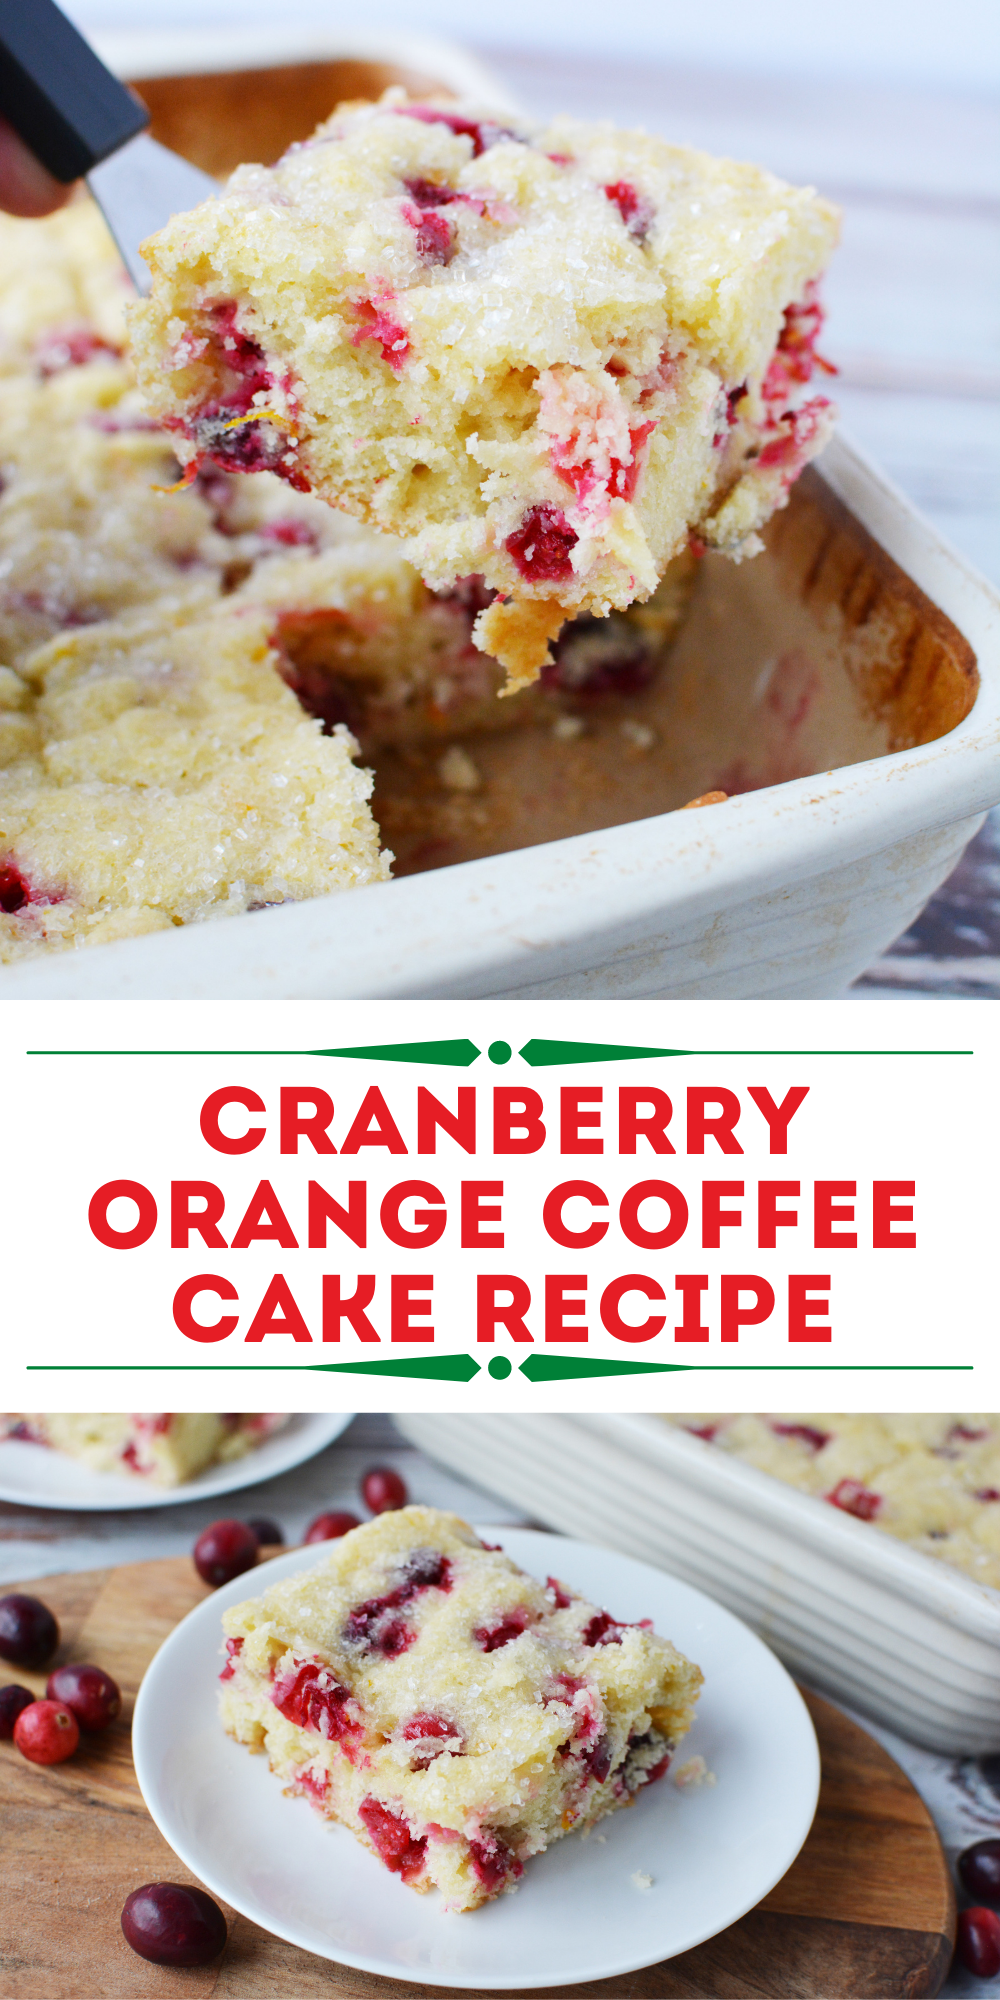 Cranberry Orange Coffee Cake Recipe for Christmas Dessert